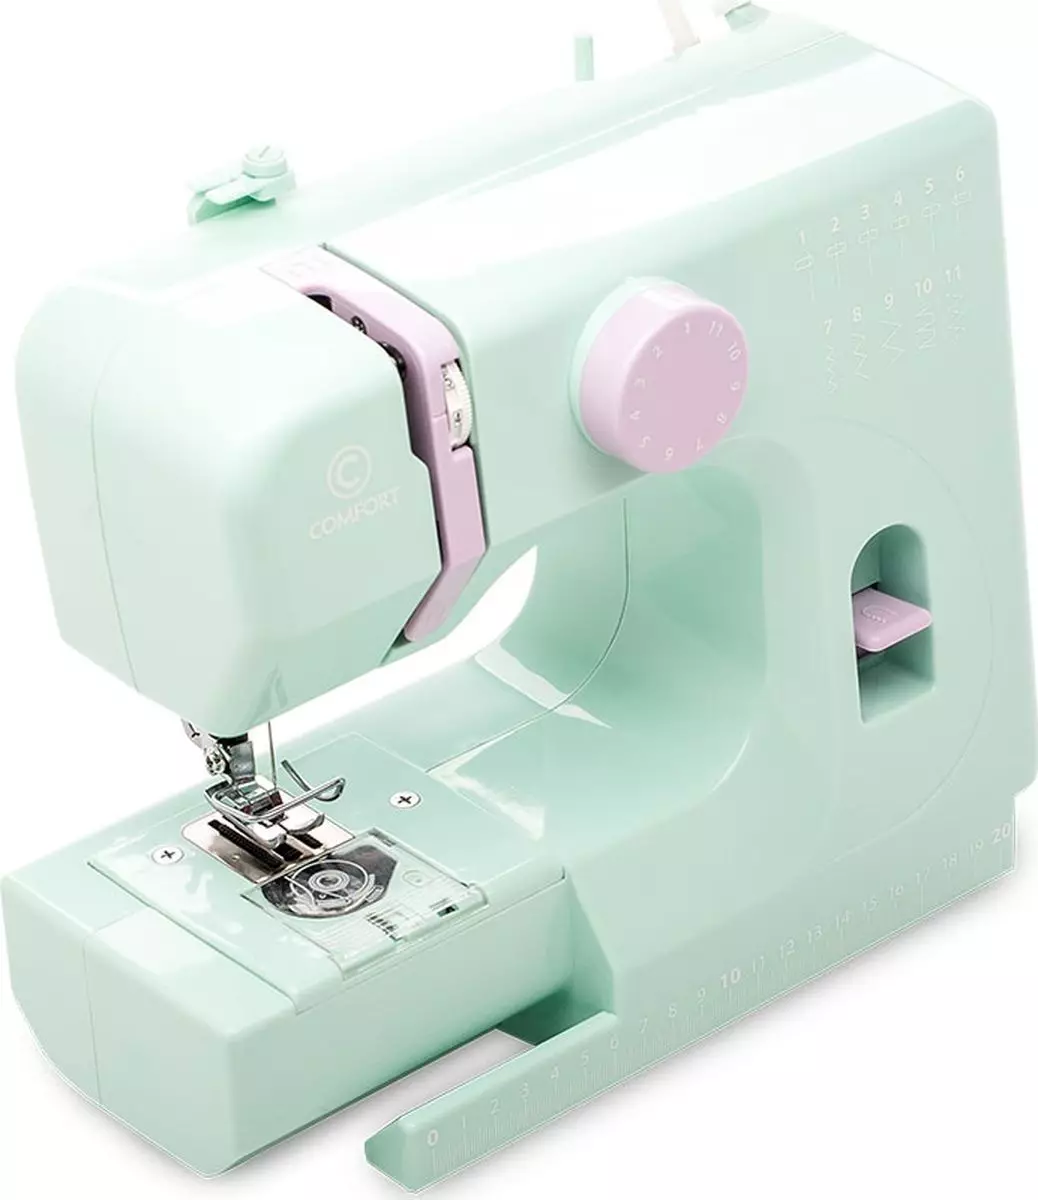 Komforto siuvimo mašinos: naudojimo instrukcijos, 80 ir 200a, 16 ir 30, 2 ir 100a, 20 ir 535 modelis 15641_13